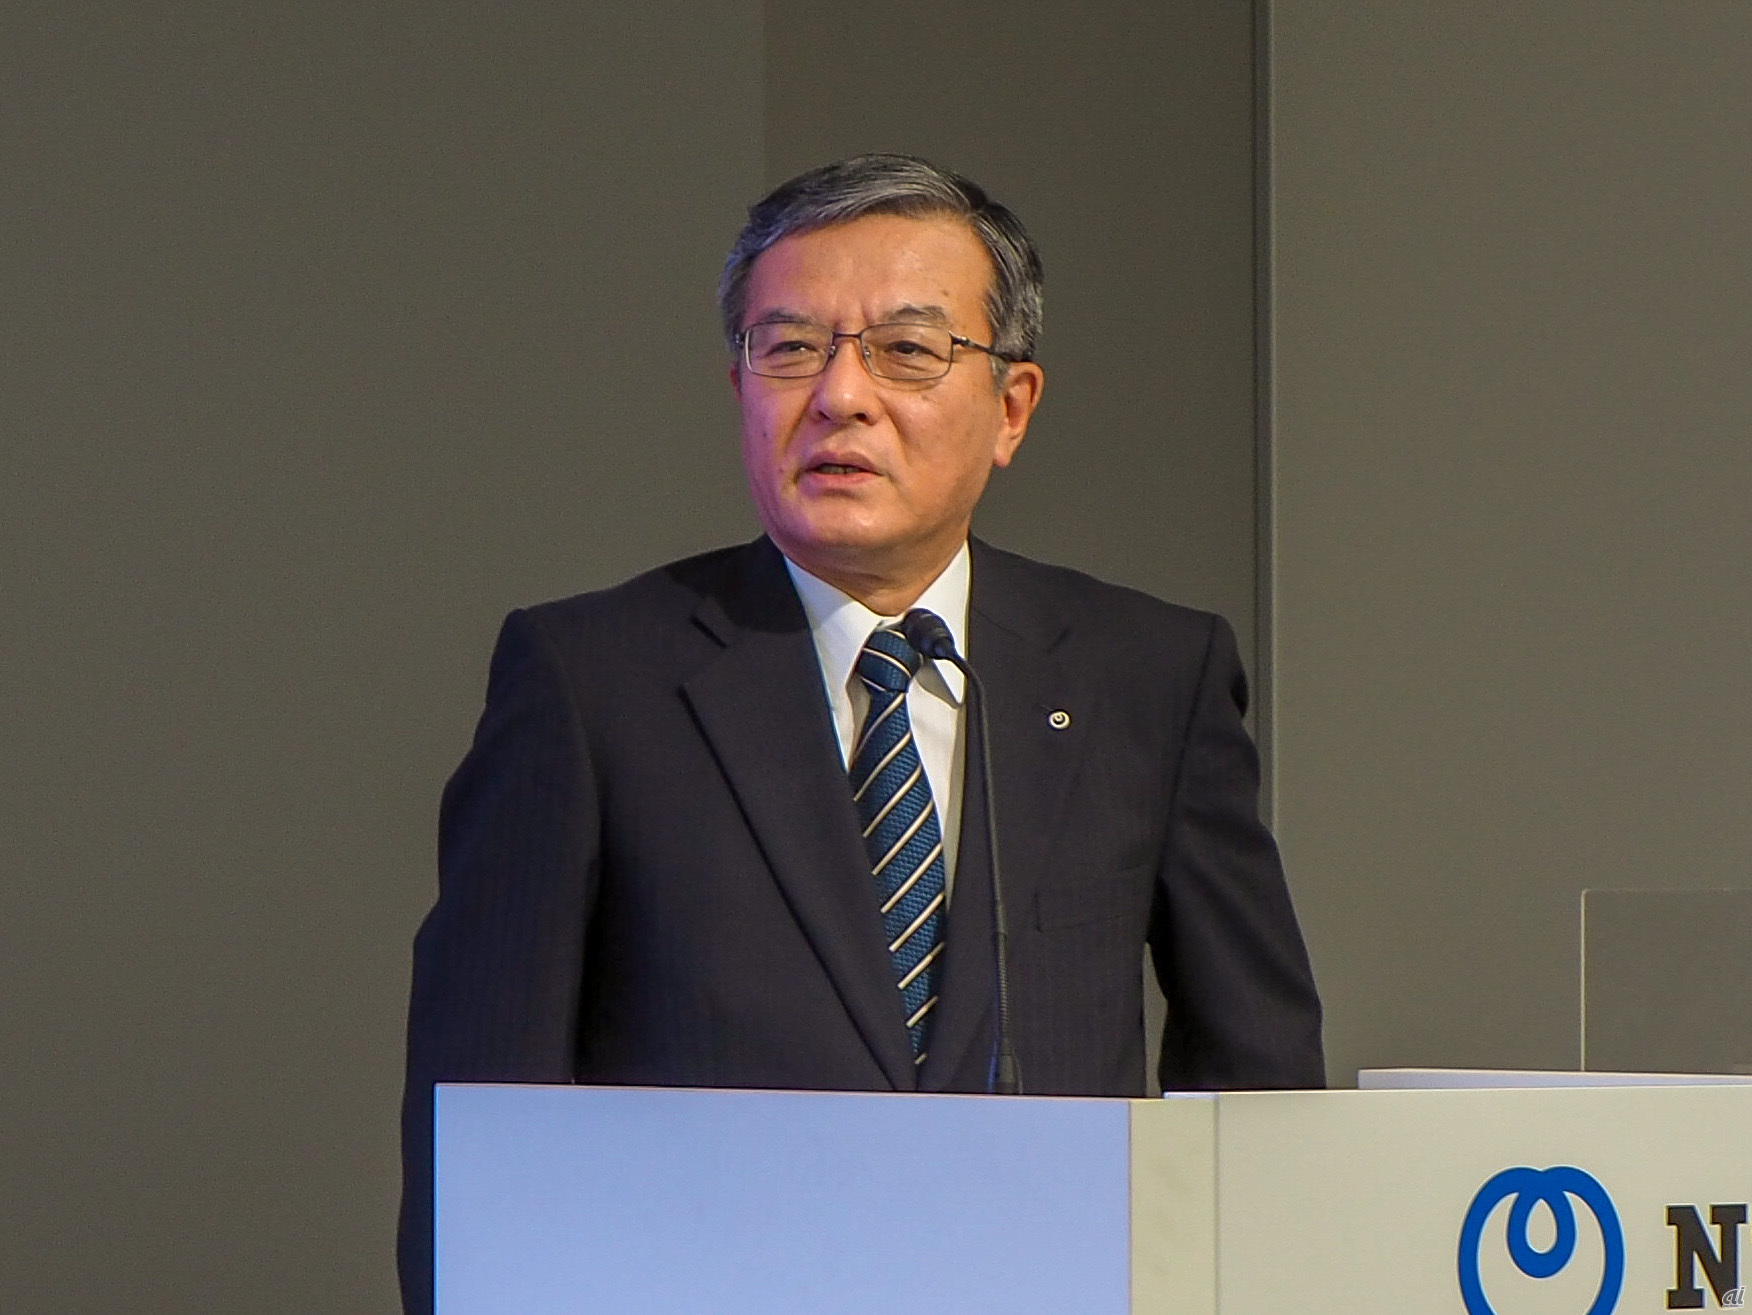 NTTの島田明氏は、政府のNTT株売却に関する動きが、NTT法のあり方を見直す議論の契機になるとも話している